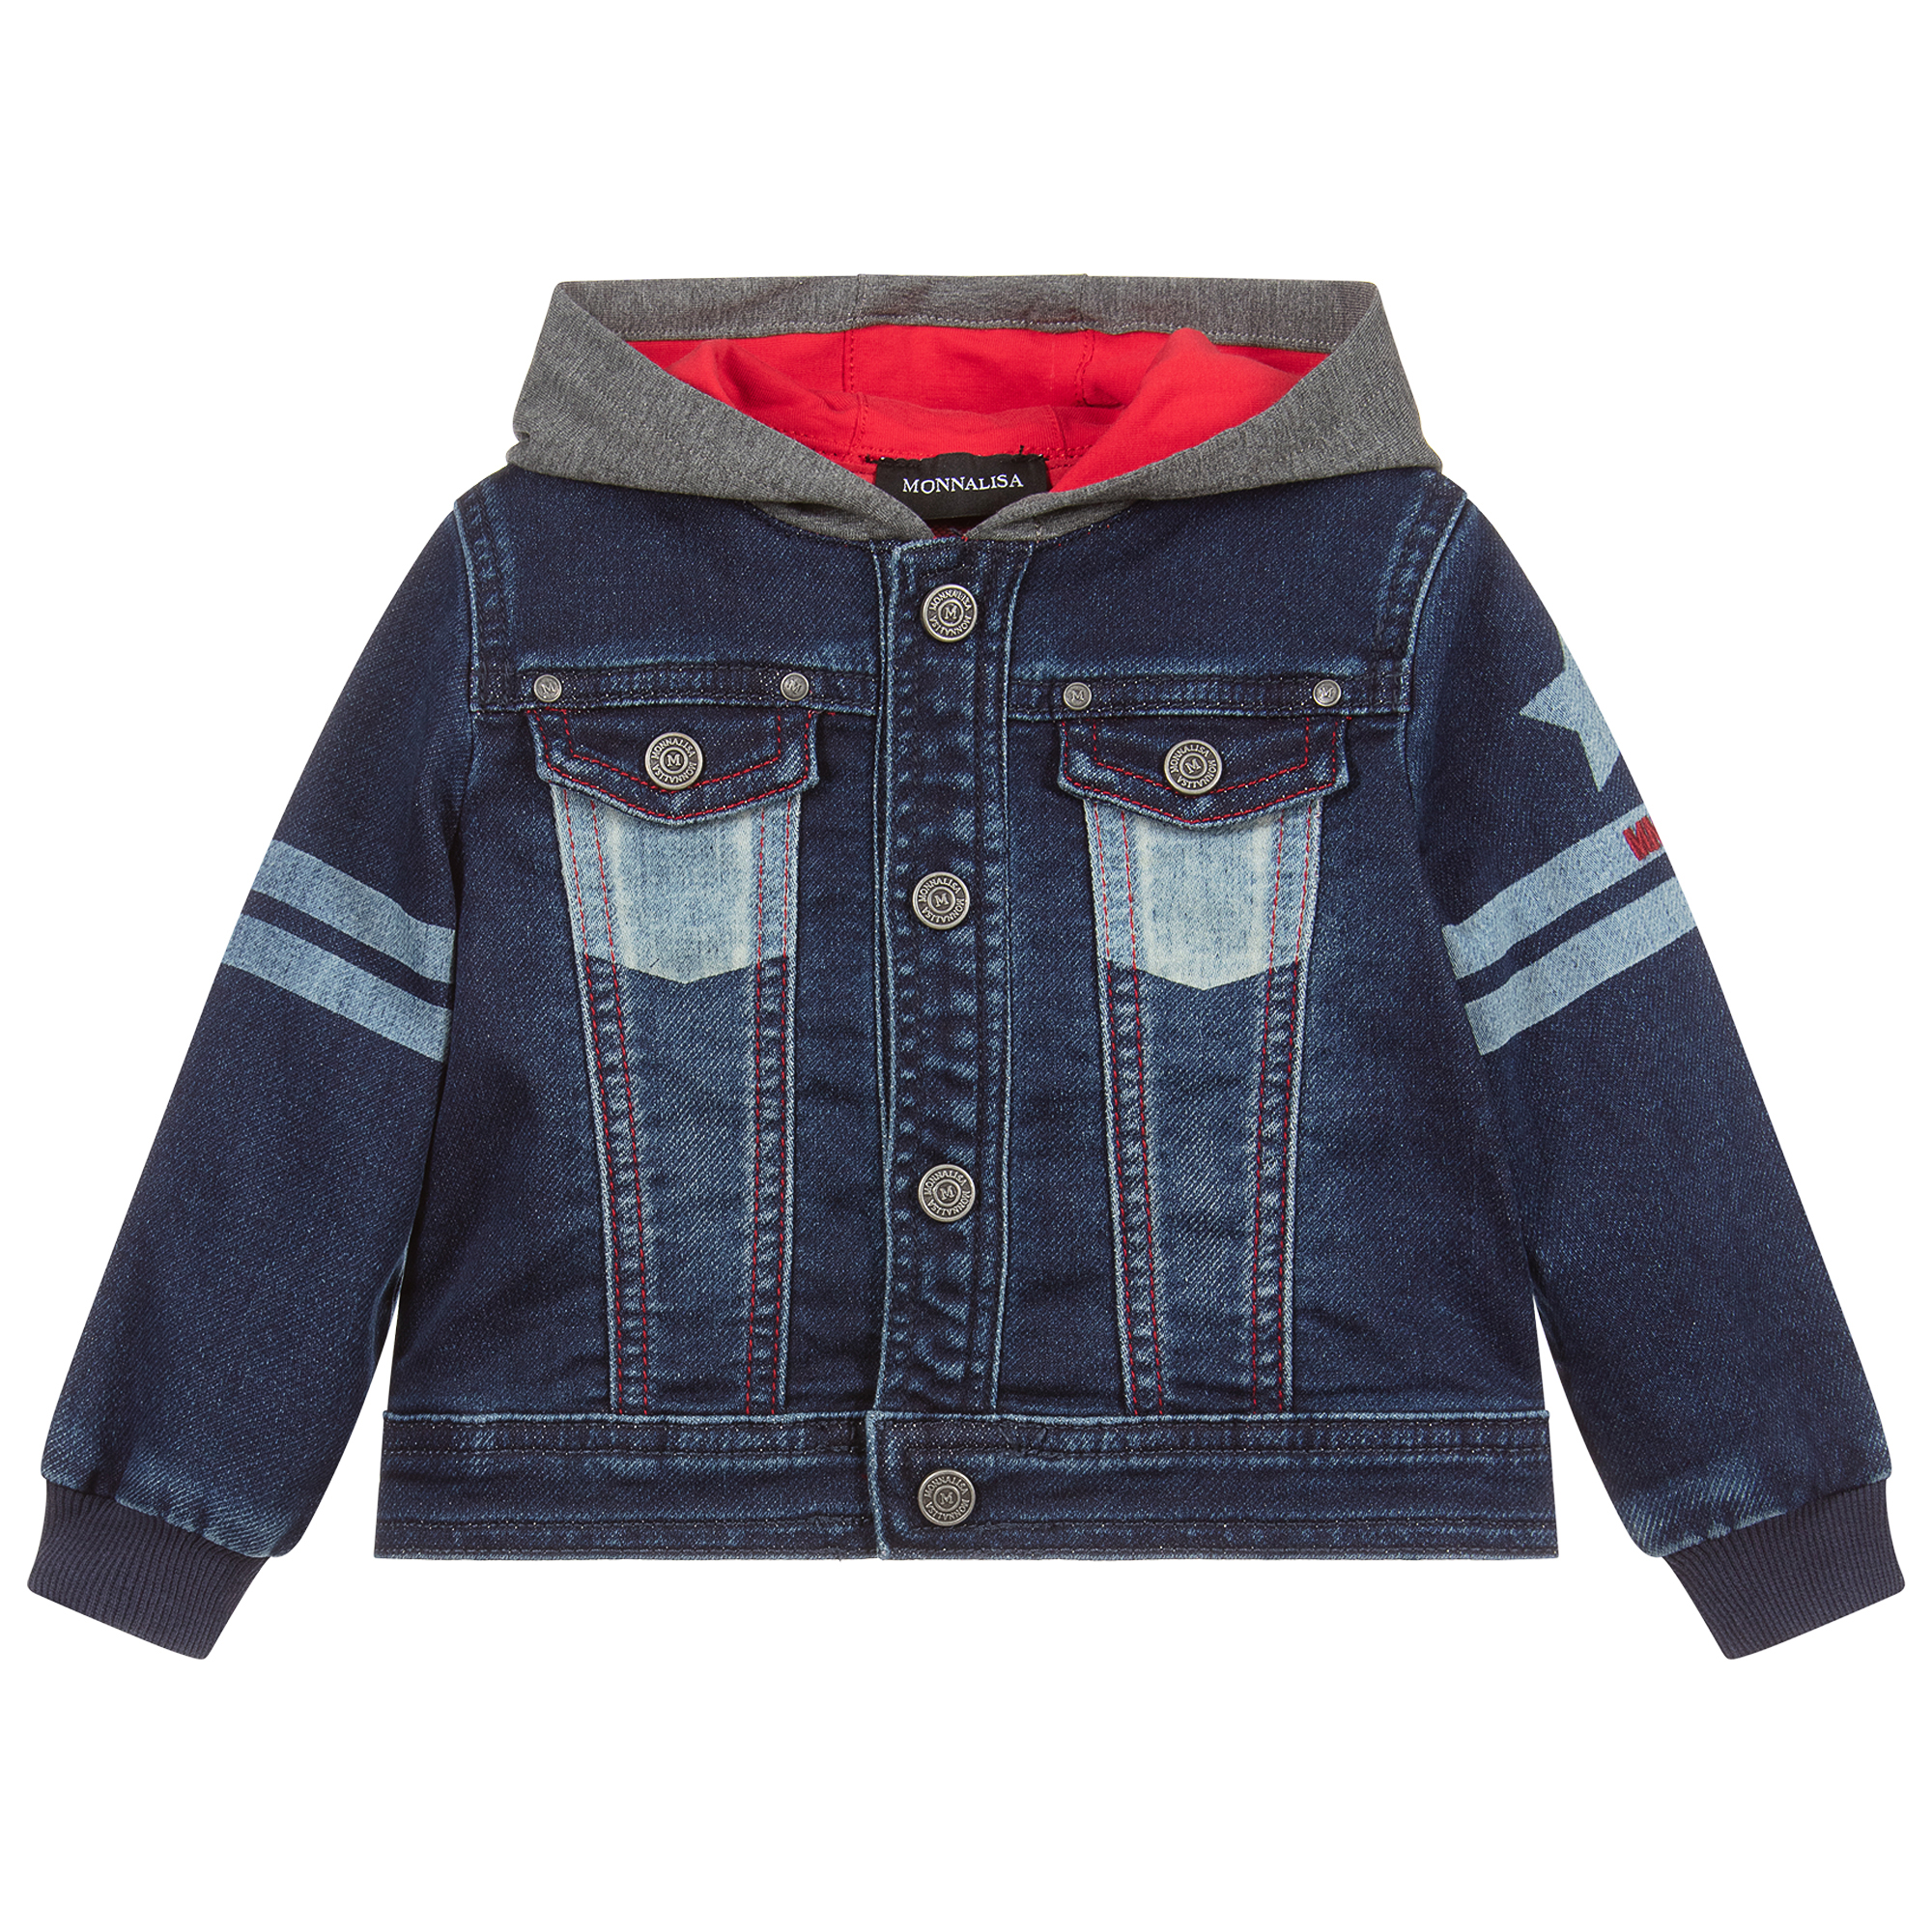 JMOORY Baby Boys Denim Jacket Kids Toddler Zipper Hoodie Jeans Jacket Top 